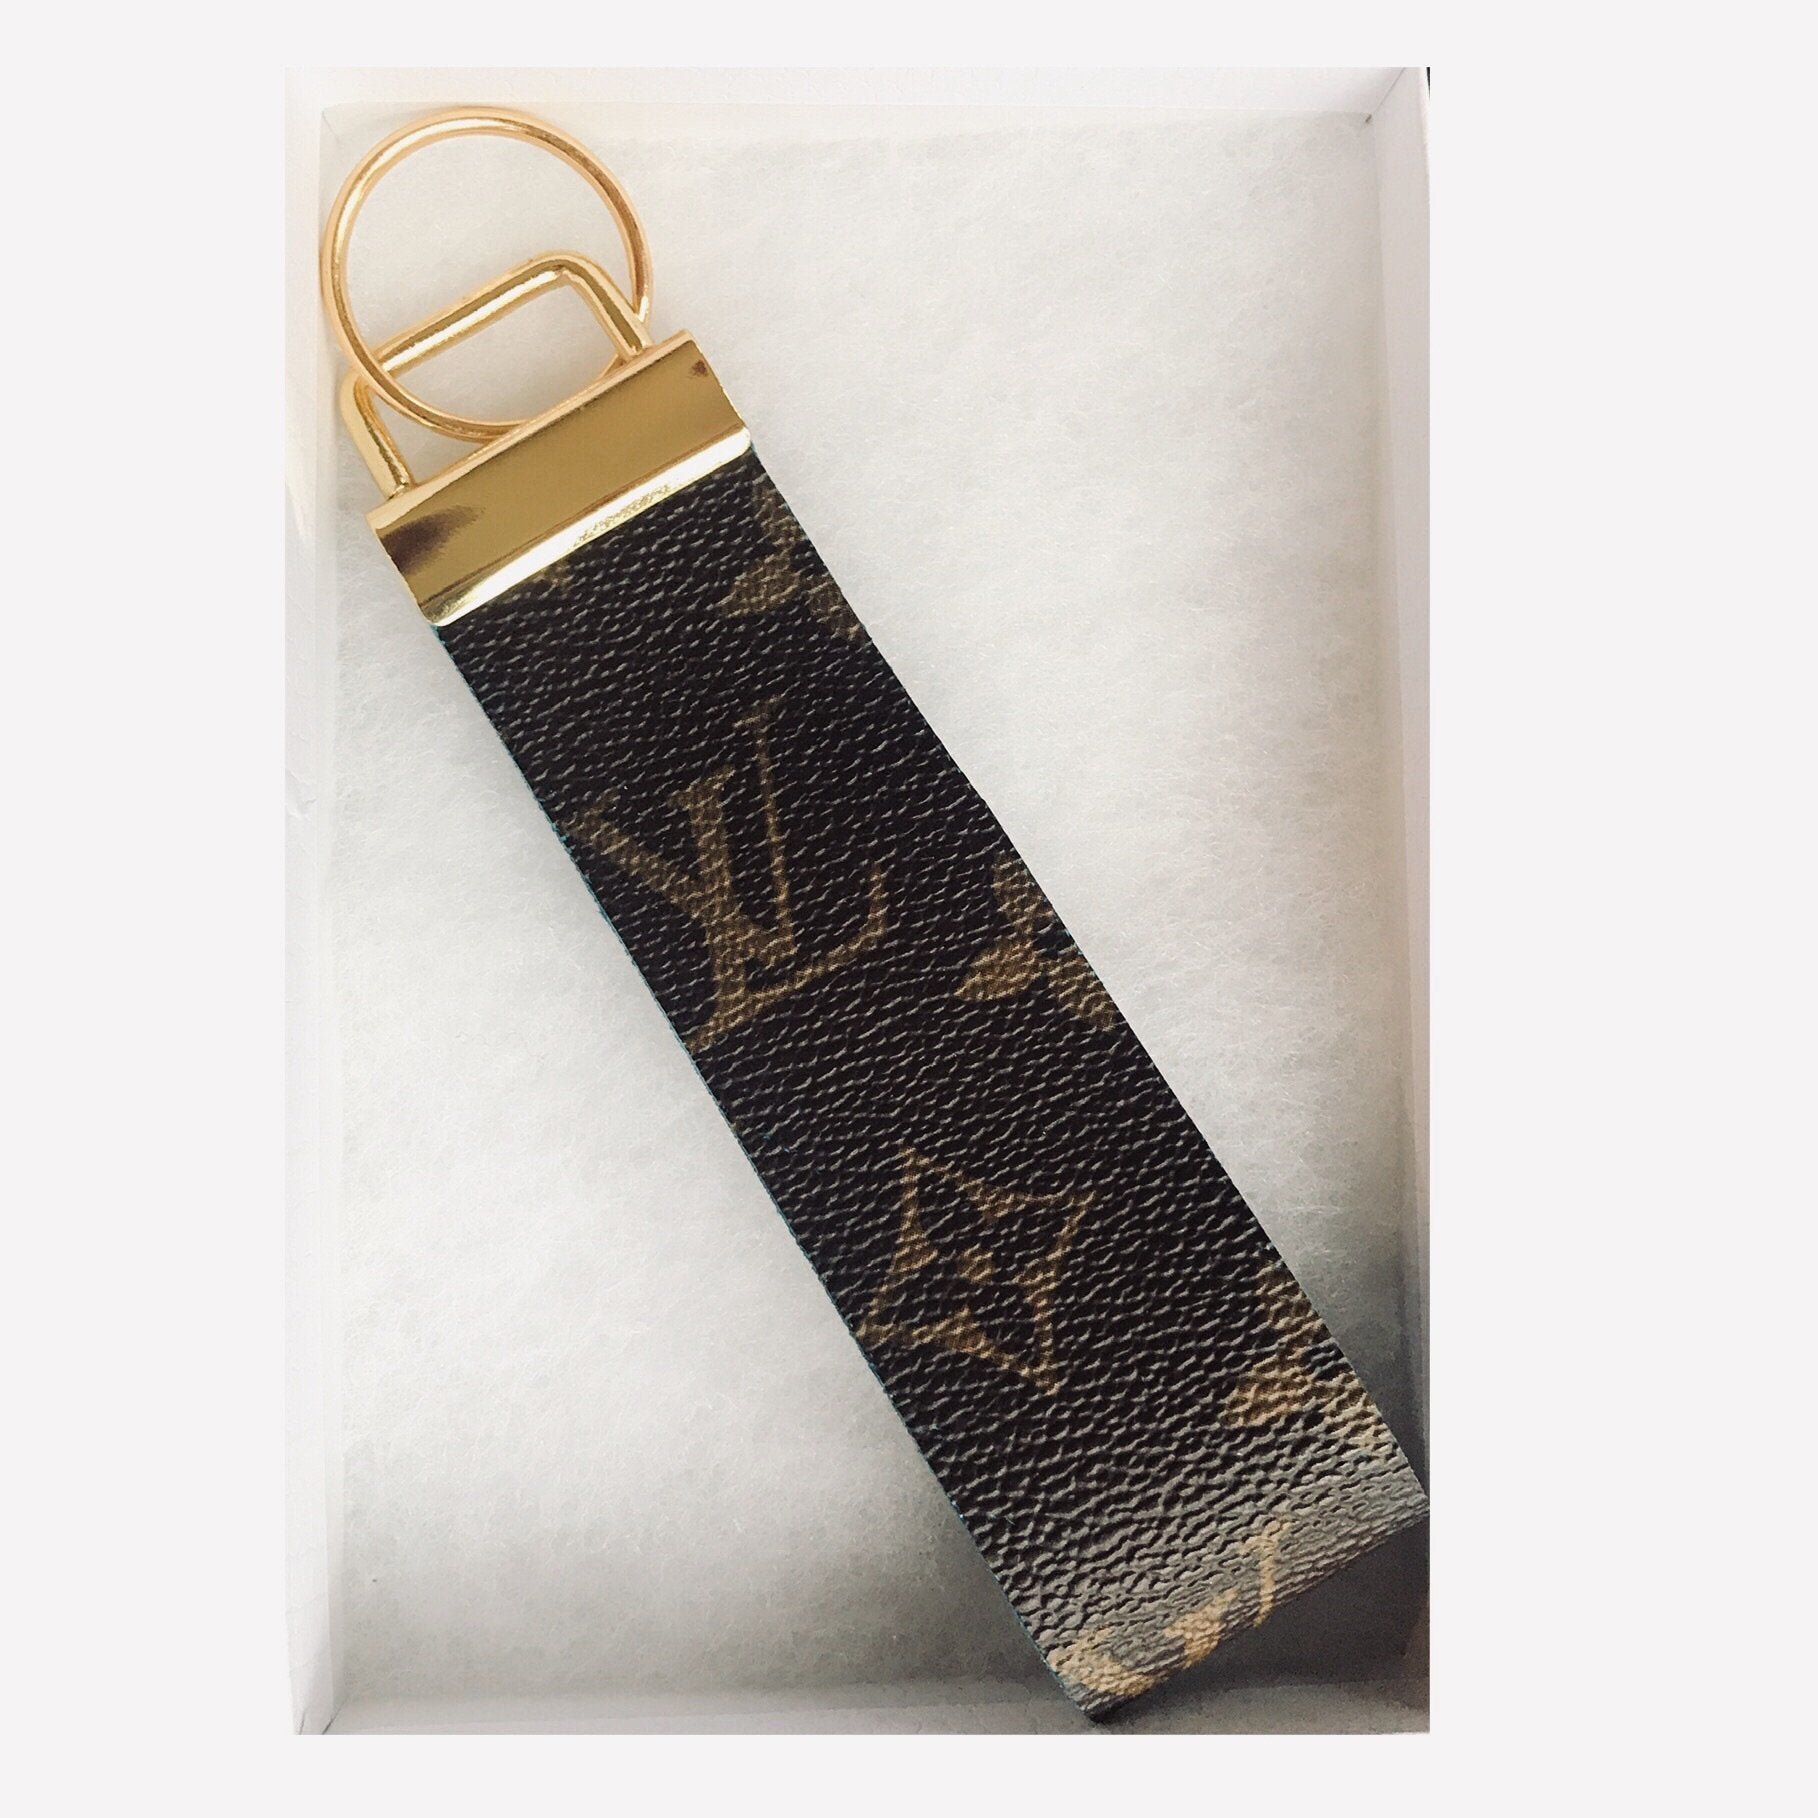 Louis Vuitton Flower Shoulder Strap Leather - ShopStyle Key Chains